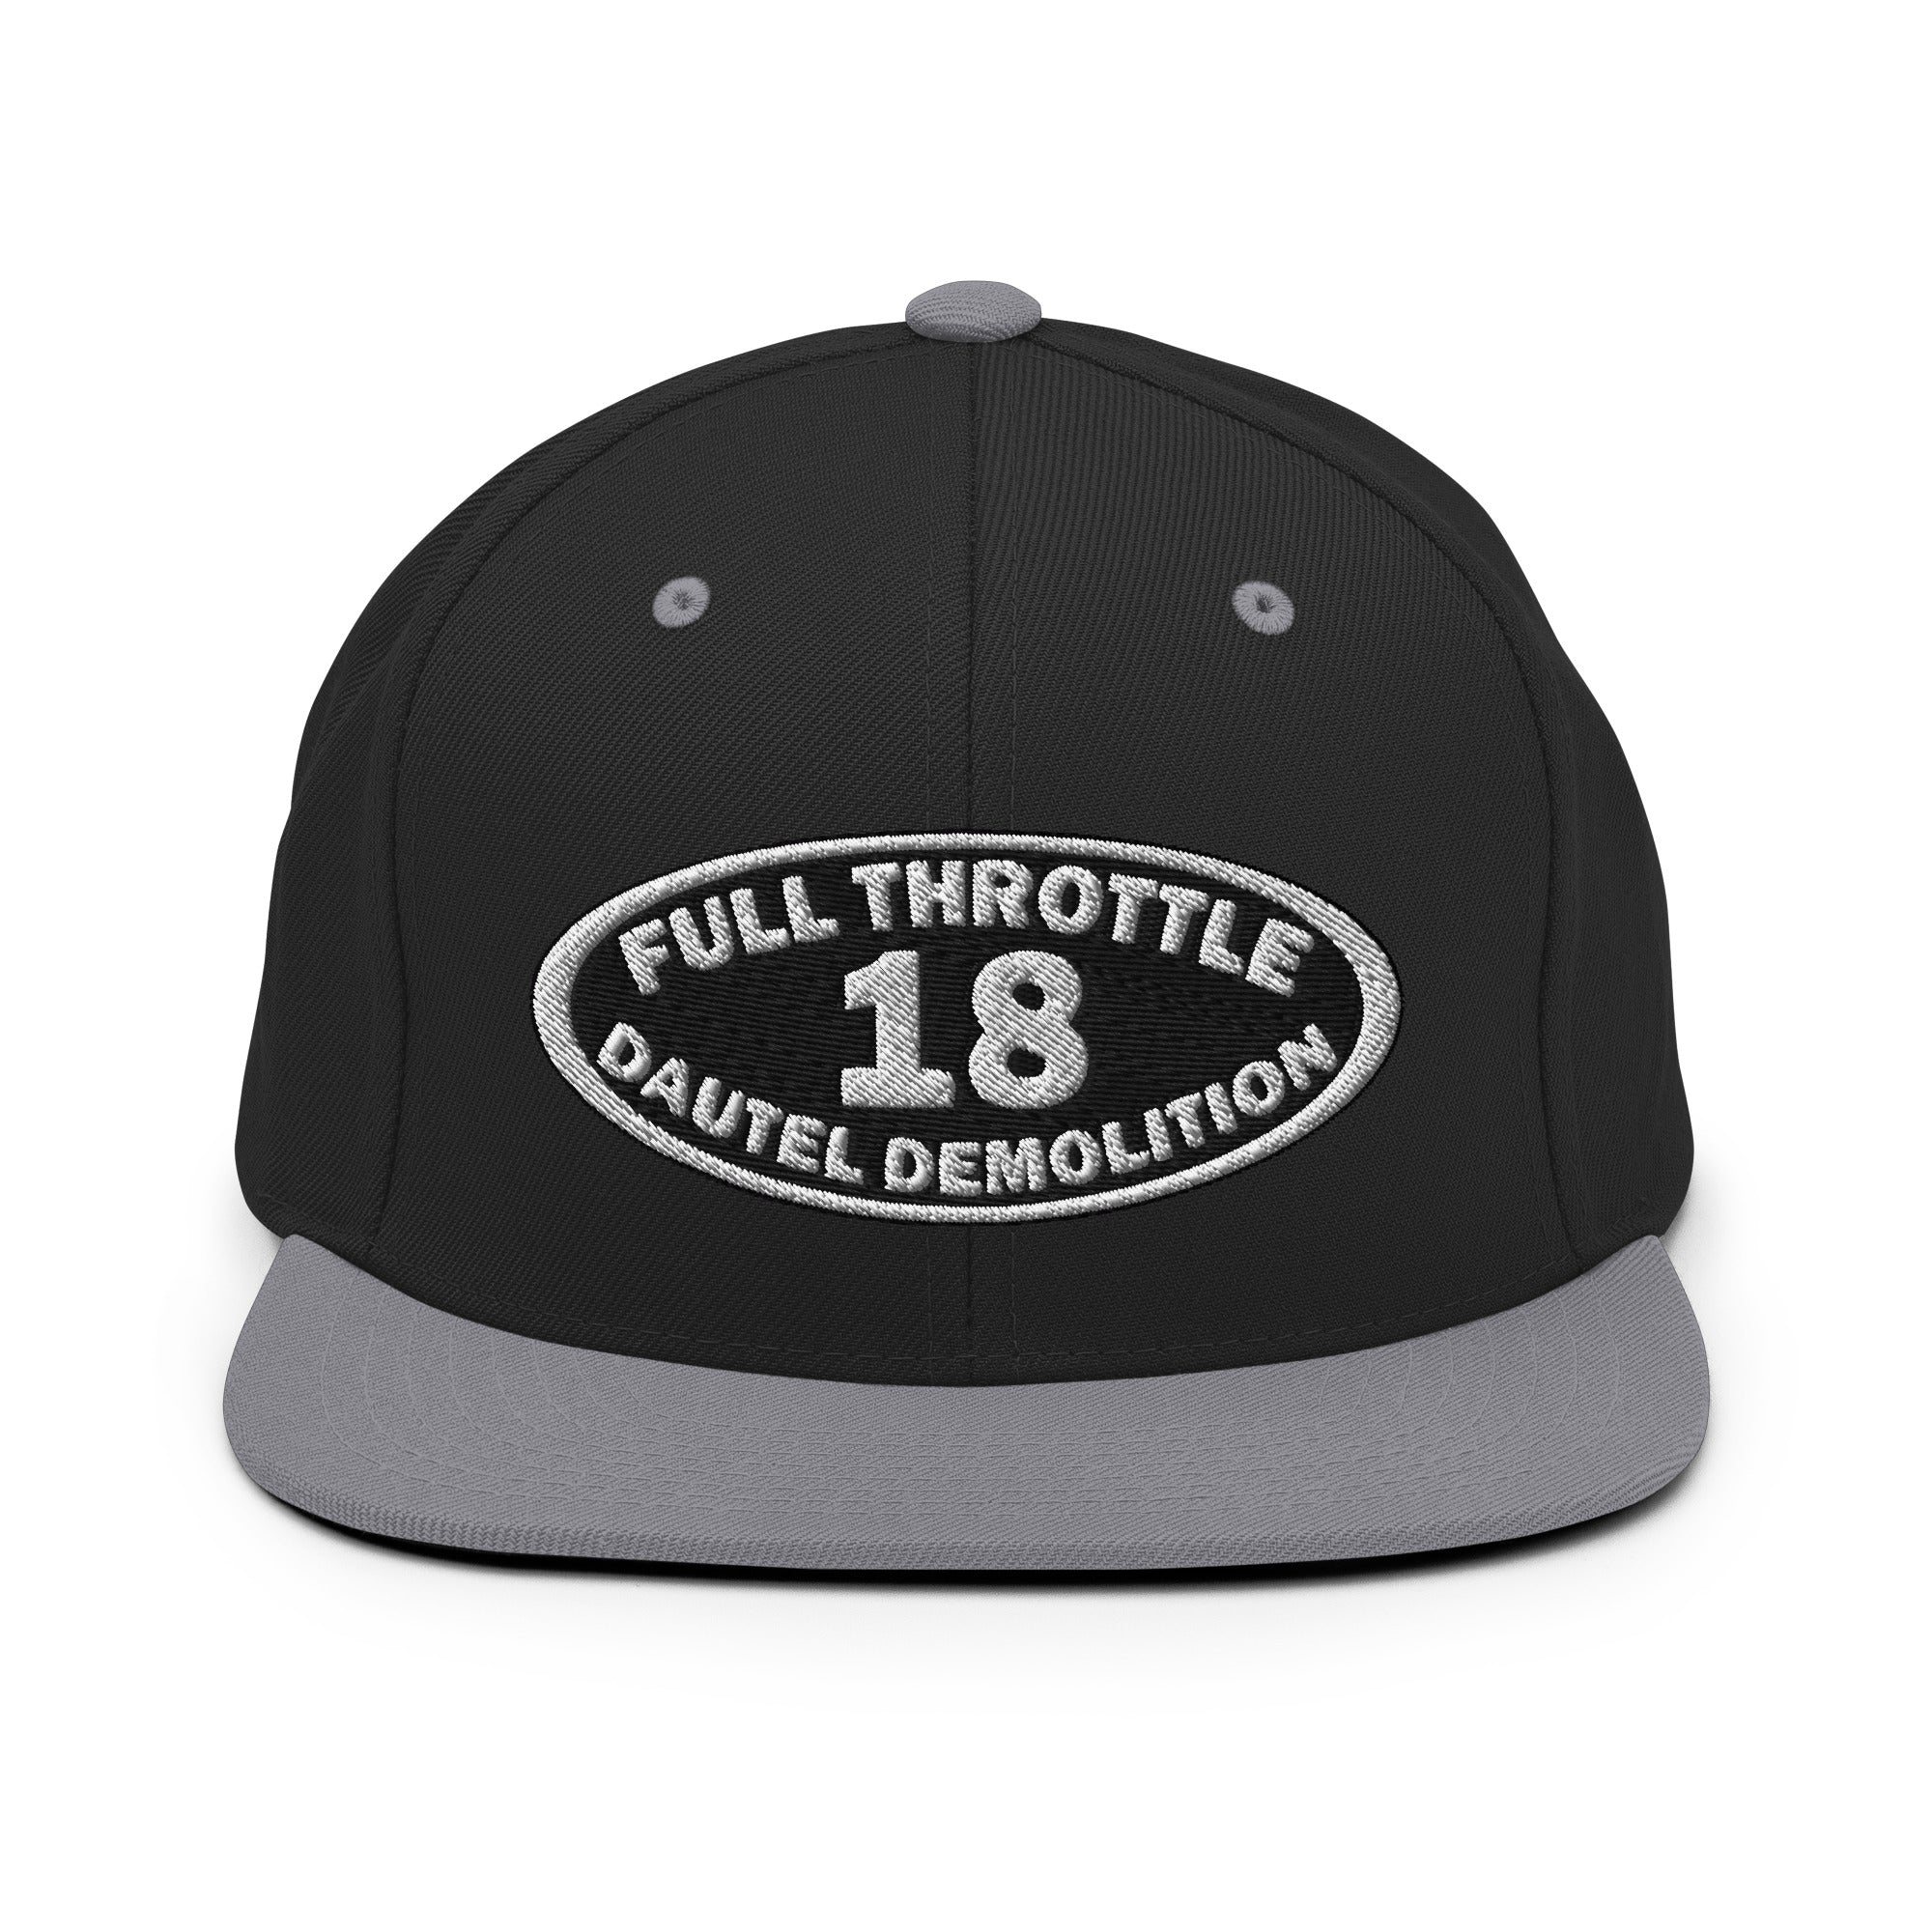 Full Throttle Dautel Oval Snapback Hat